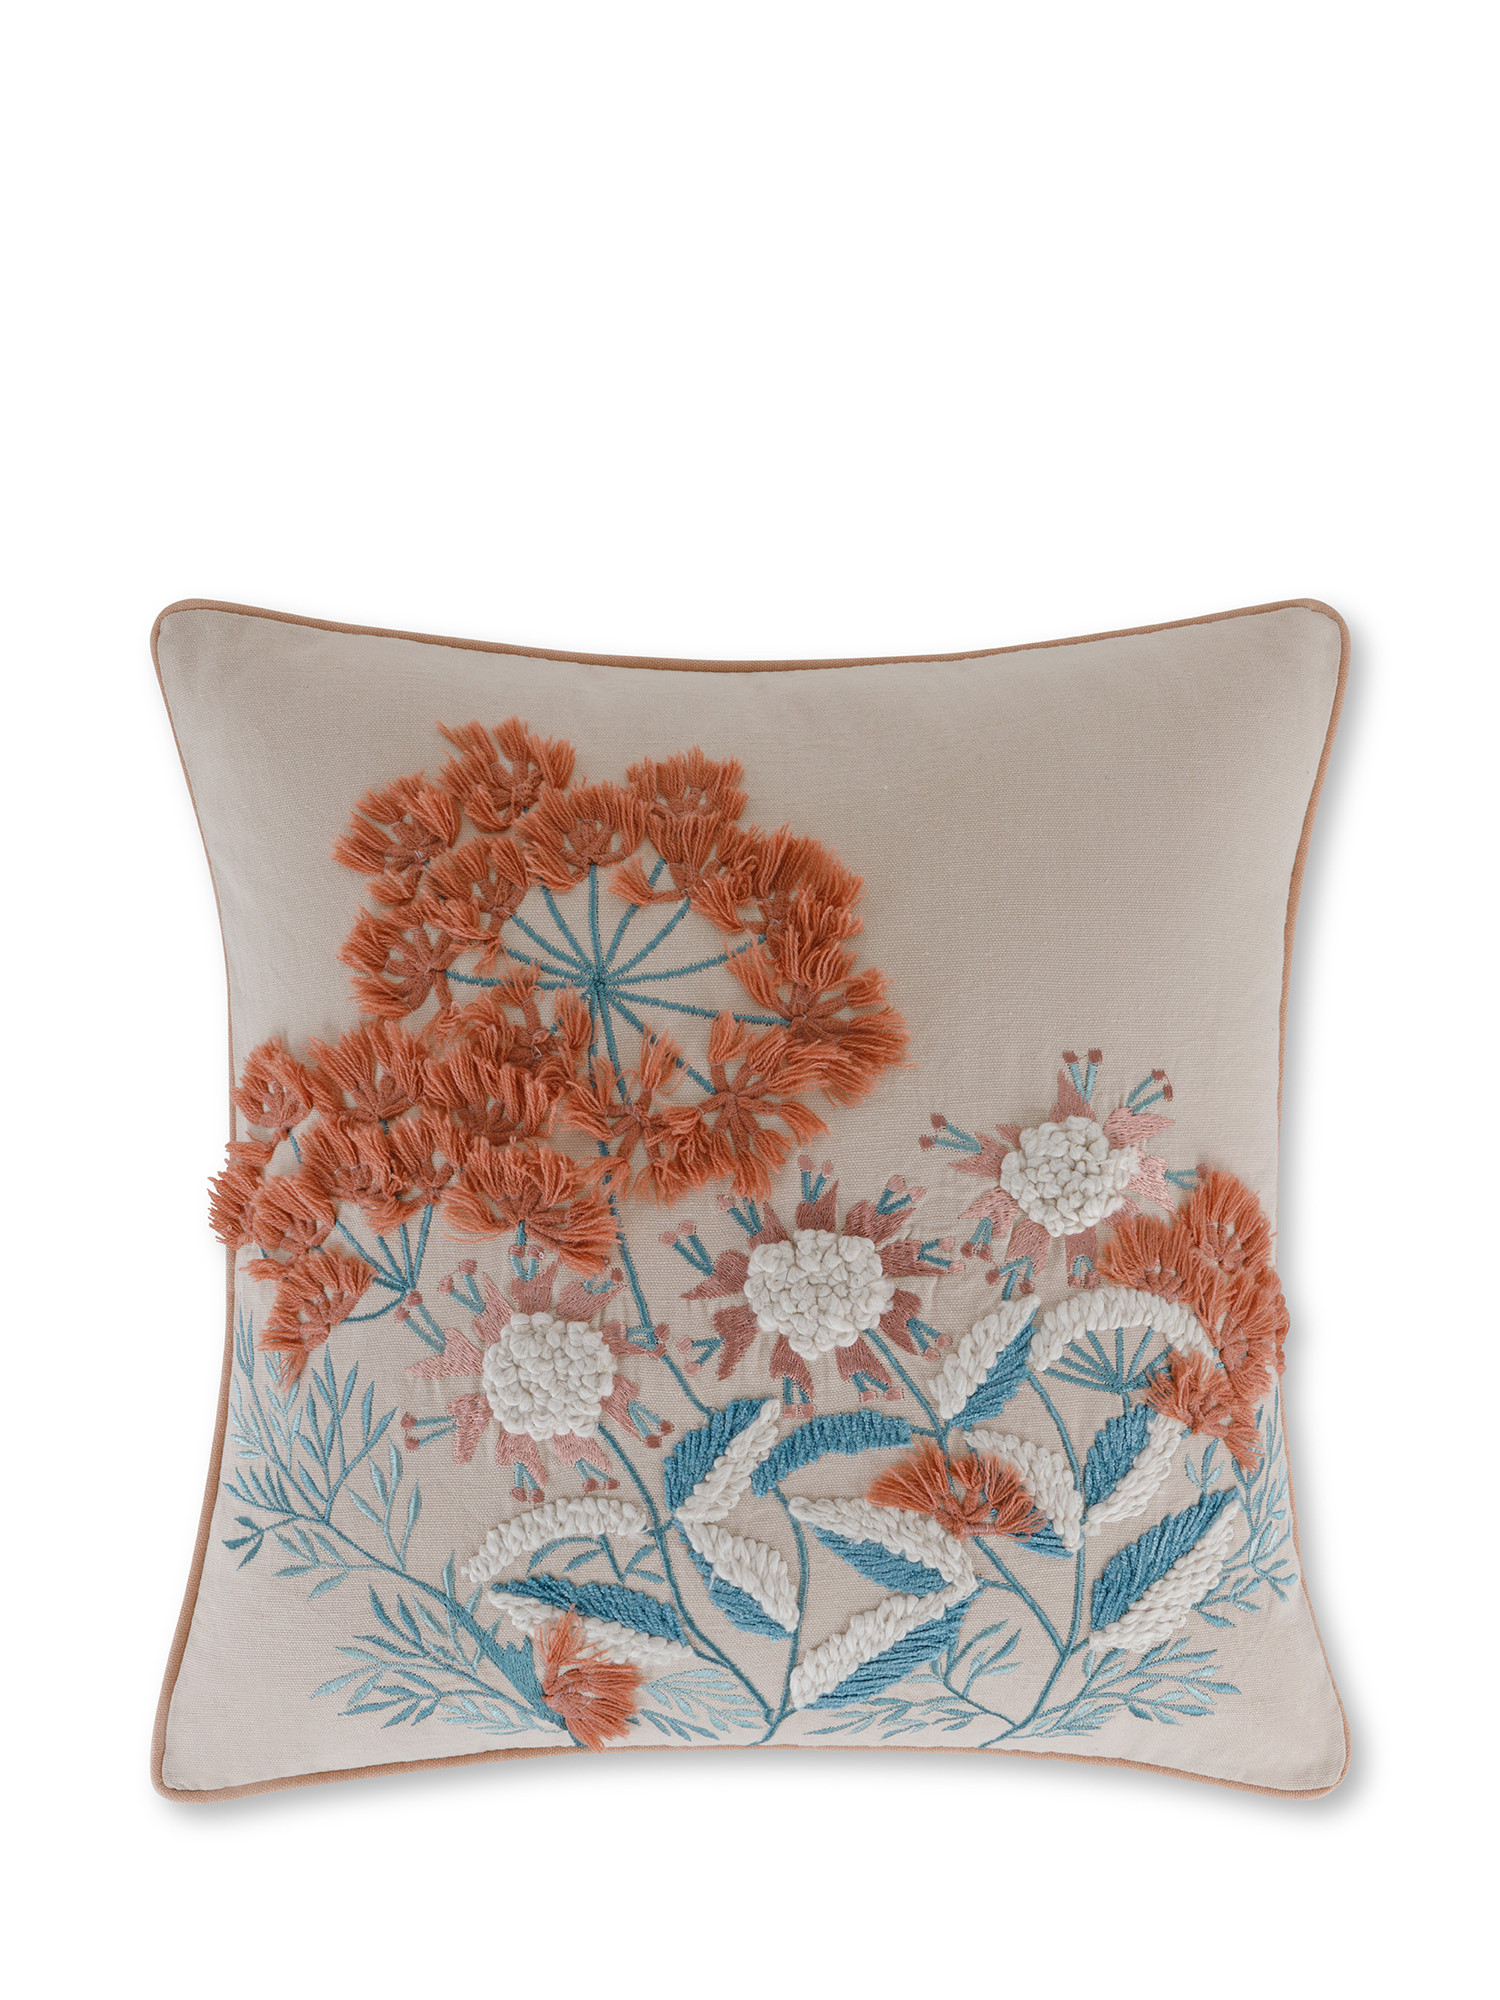 Cuscino con fiori ricamati in rilievo 45x45 cm, Rosa chiaro, large image number 0